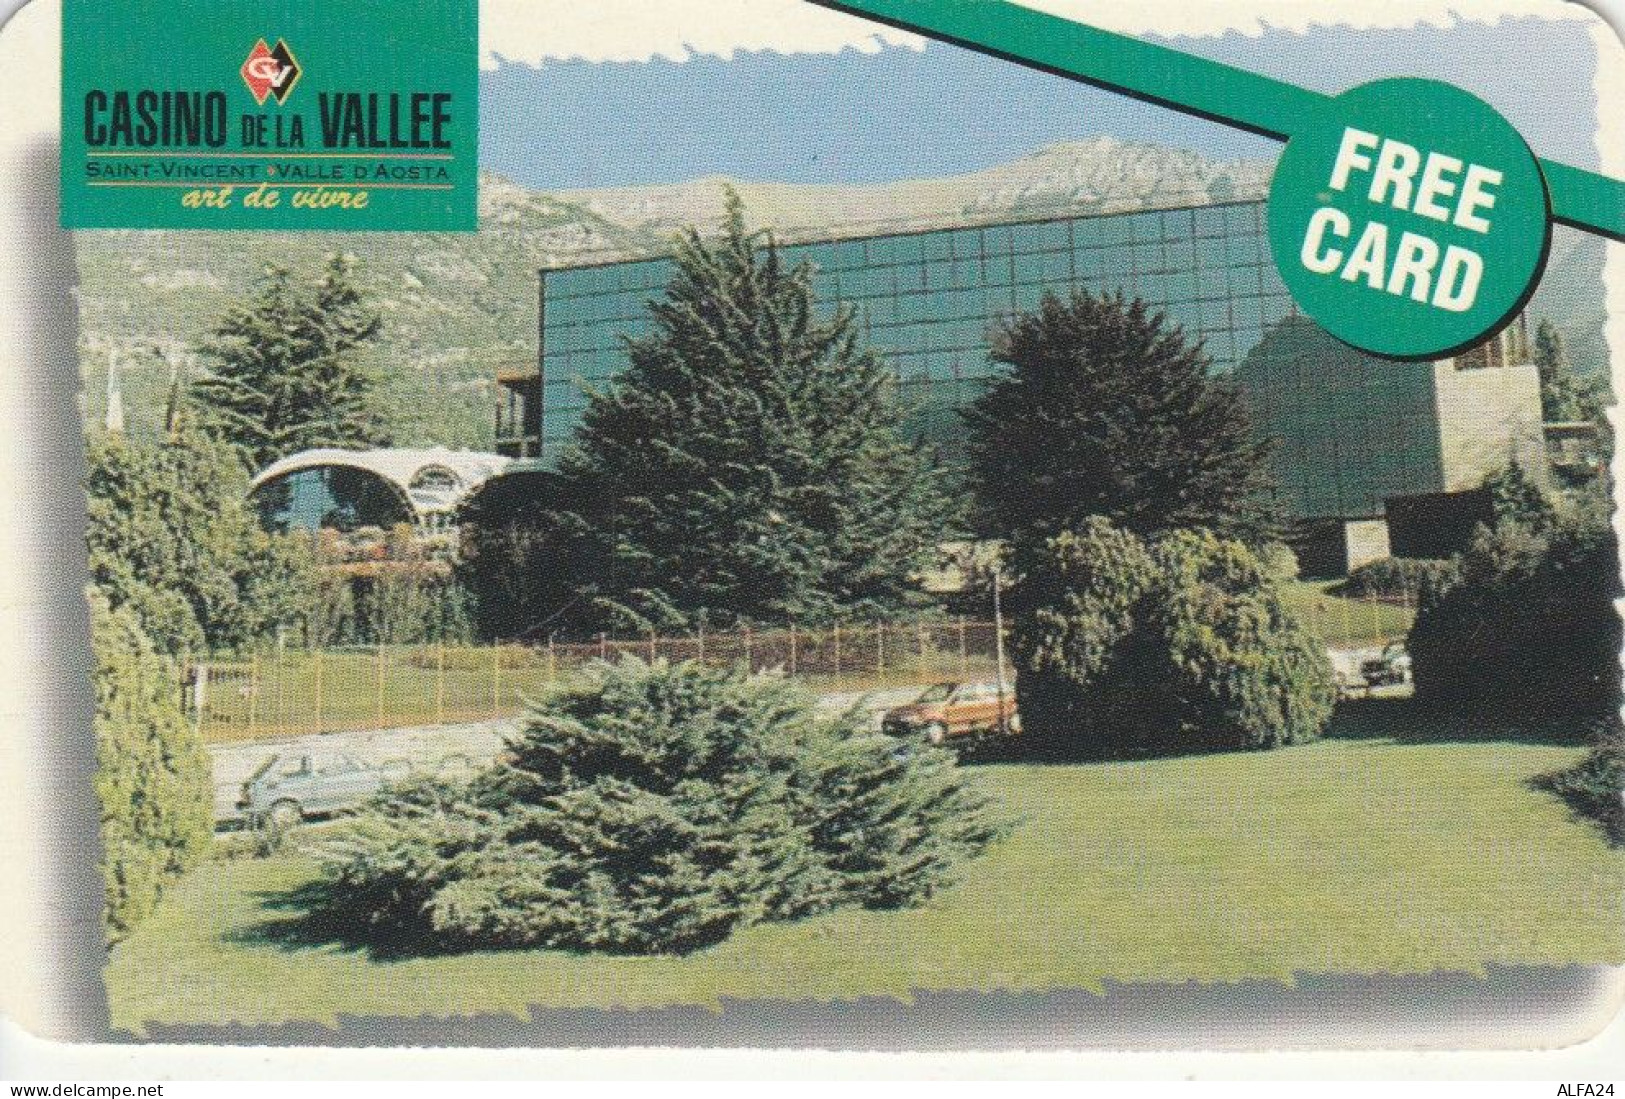 CARD INGRESSO CASINO DE LA VALLEE (CK3779 - Cartes De Casino